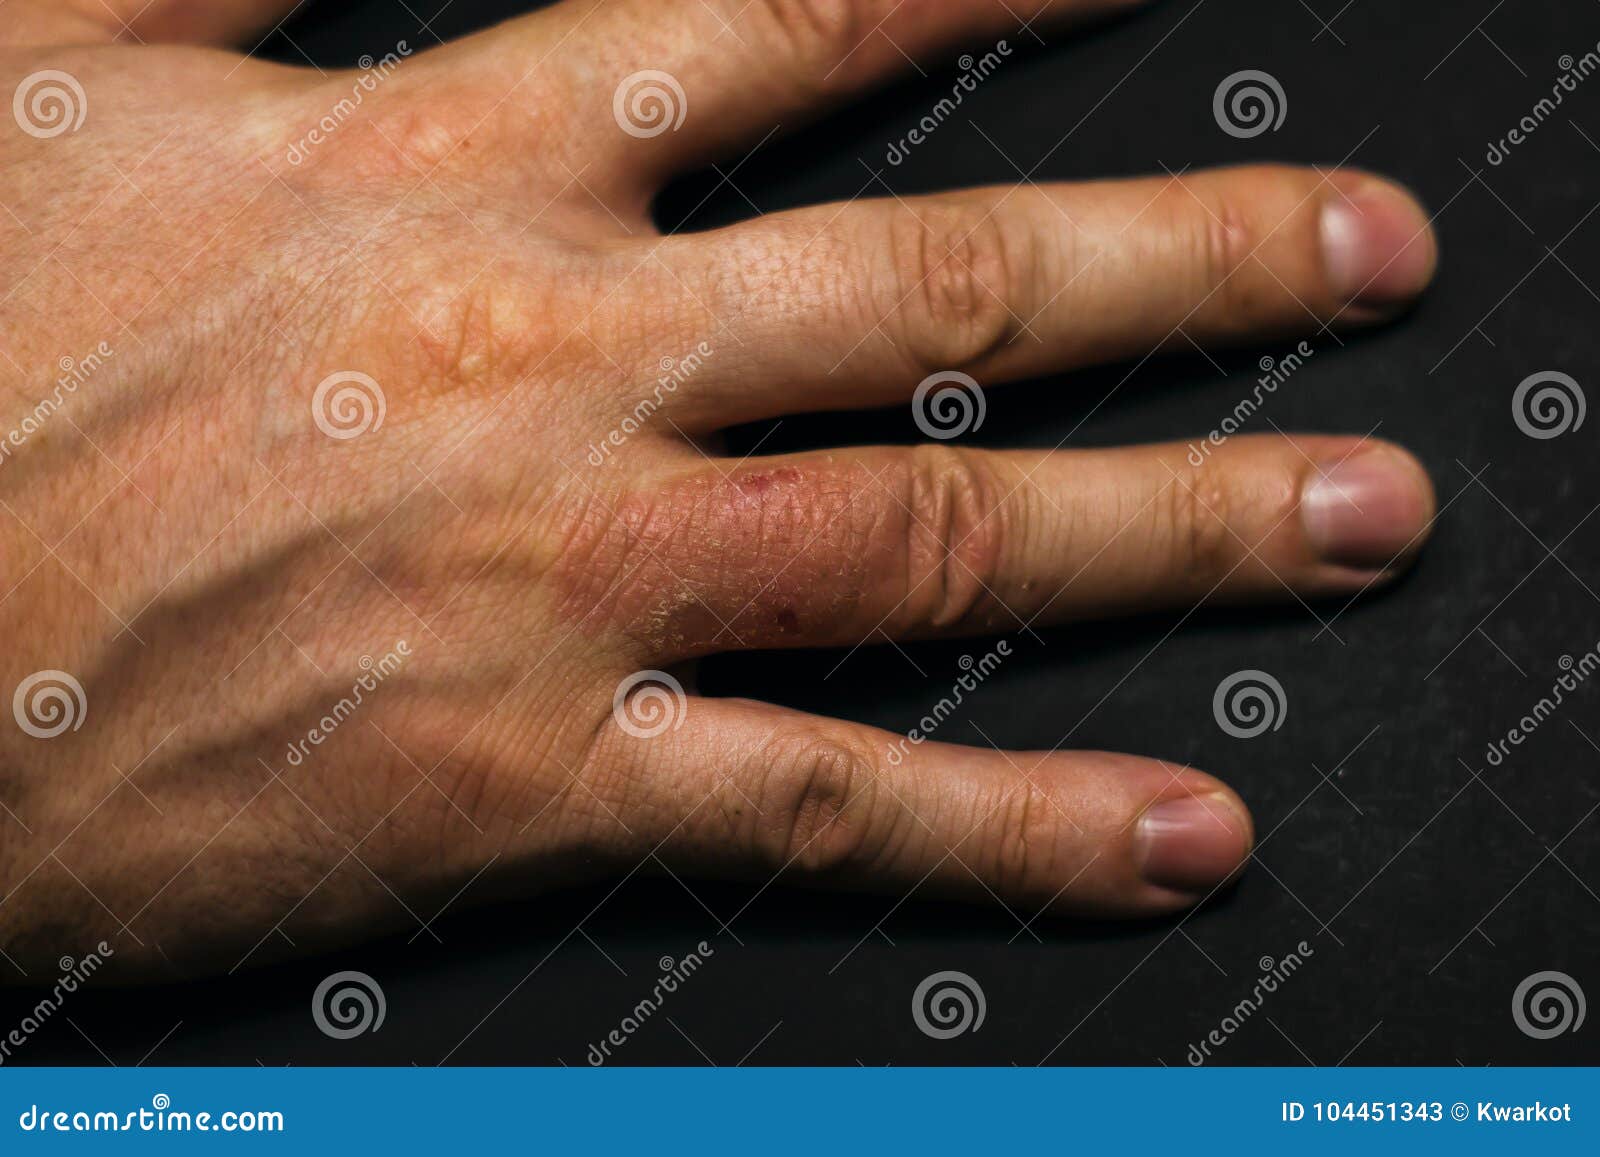 指AD特应性皮炎特应性湿疹的特写 皮肤病概念 库存图片. 图片 包括有 手指, 皮肤, 知道, 修改, 医疗 - 187529371